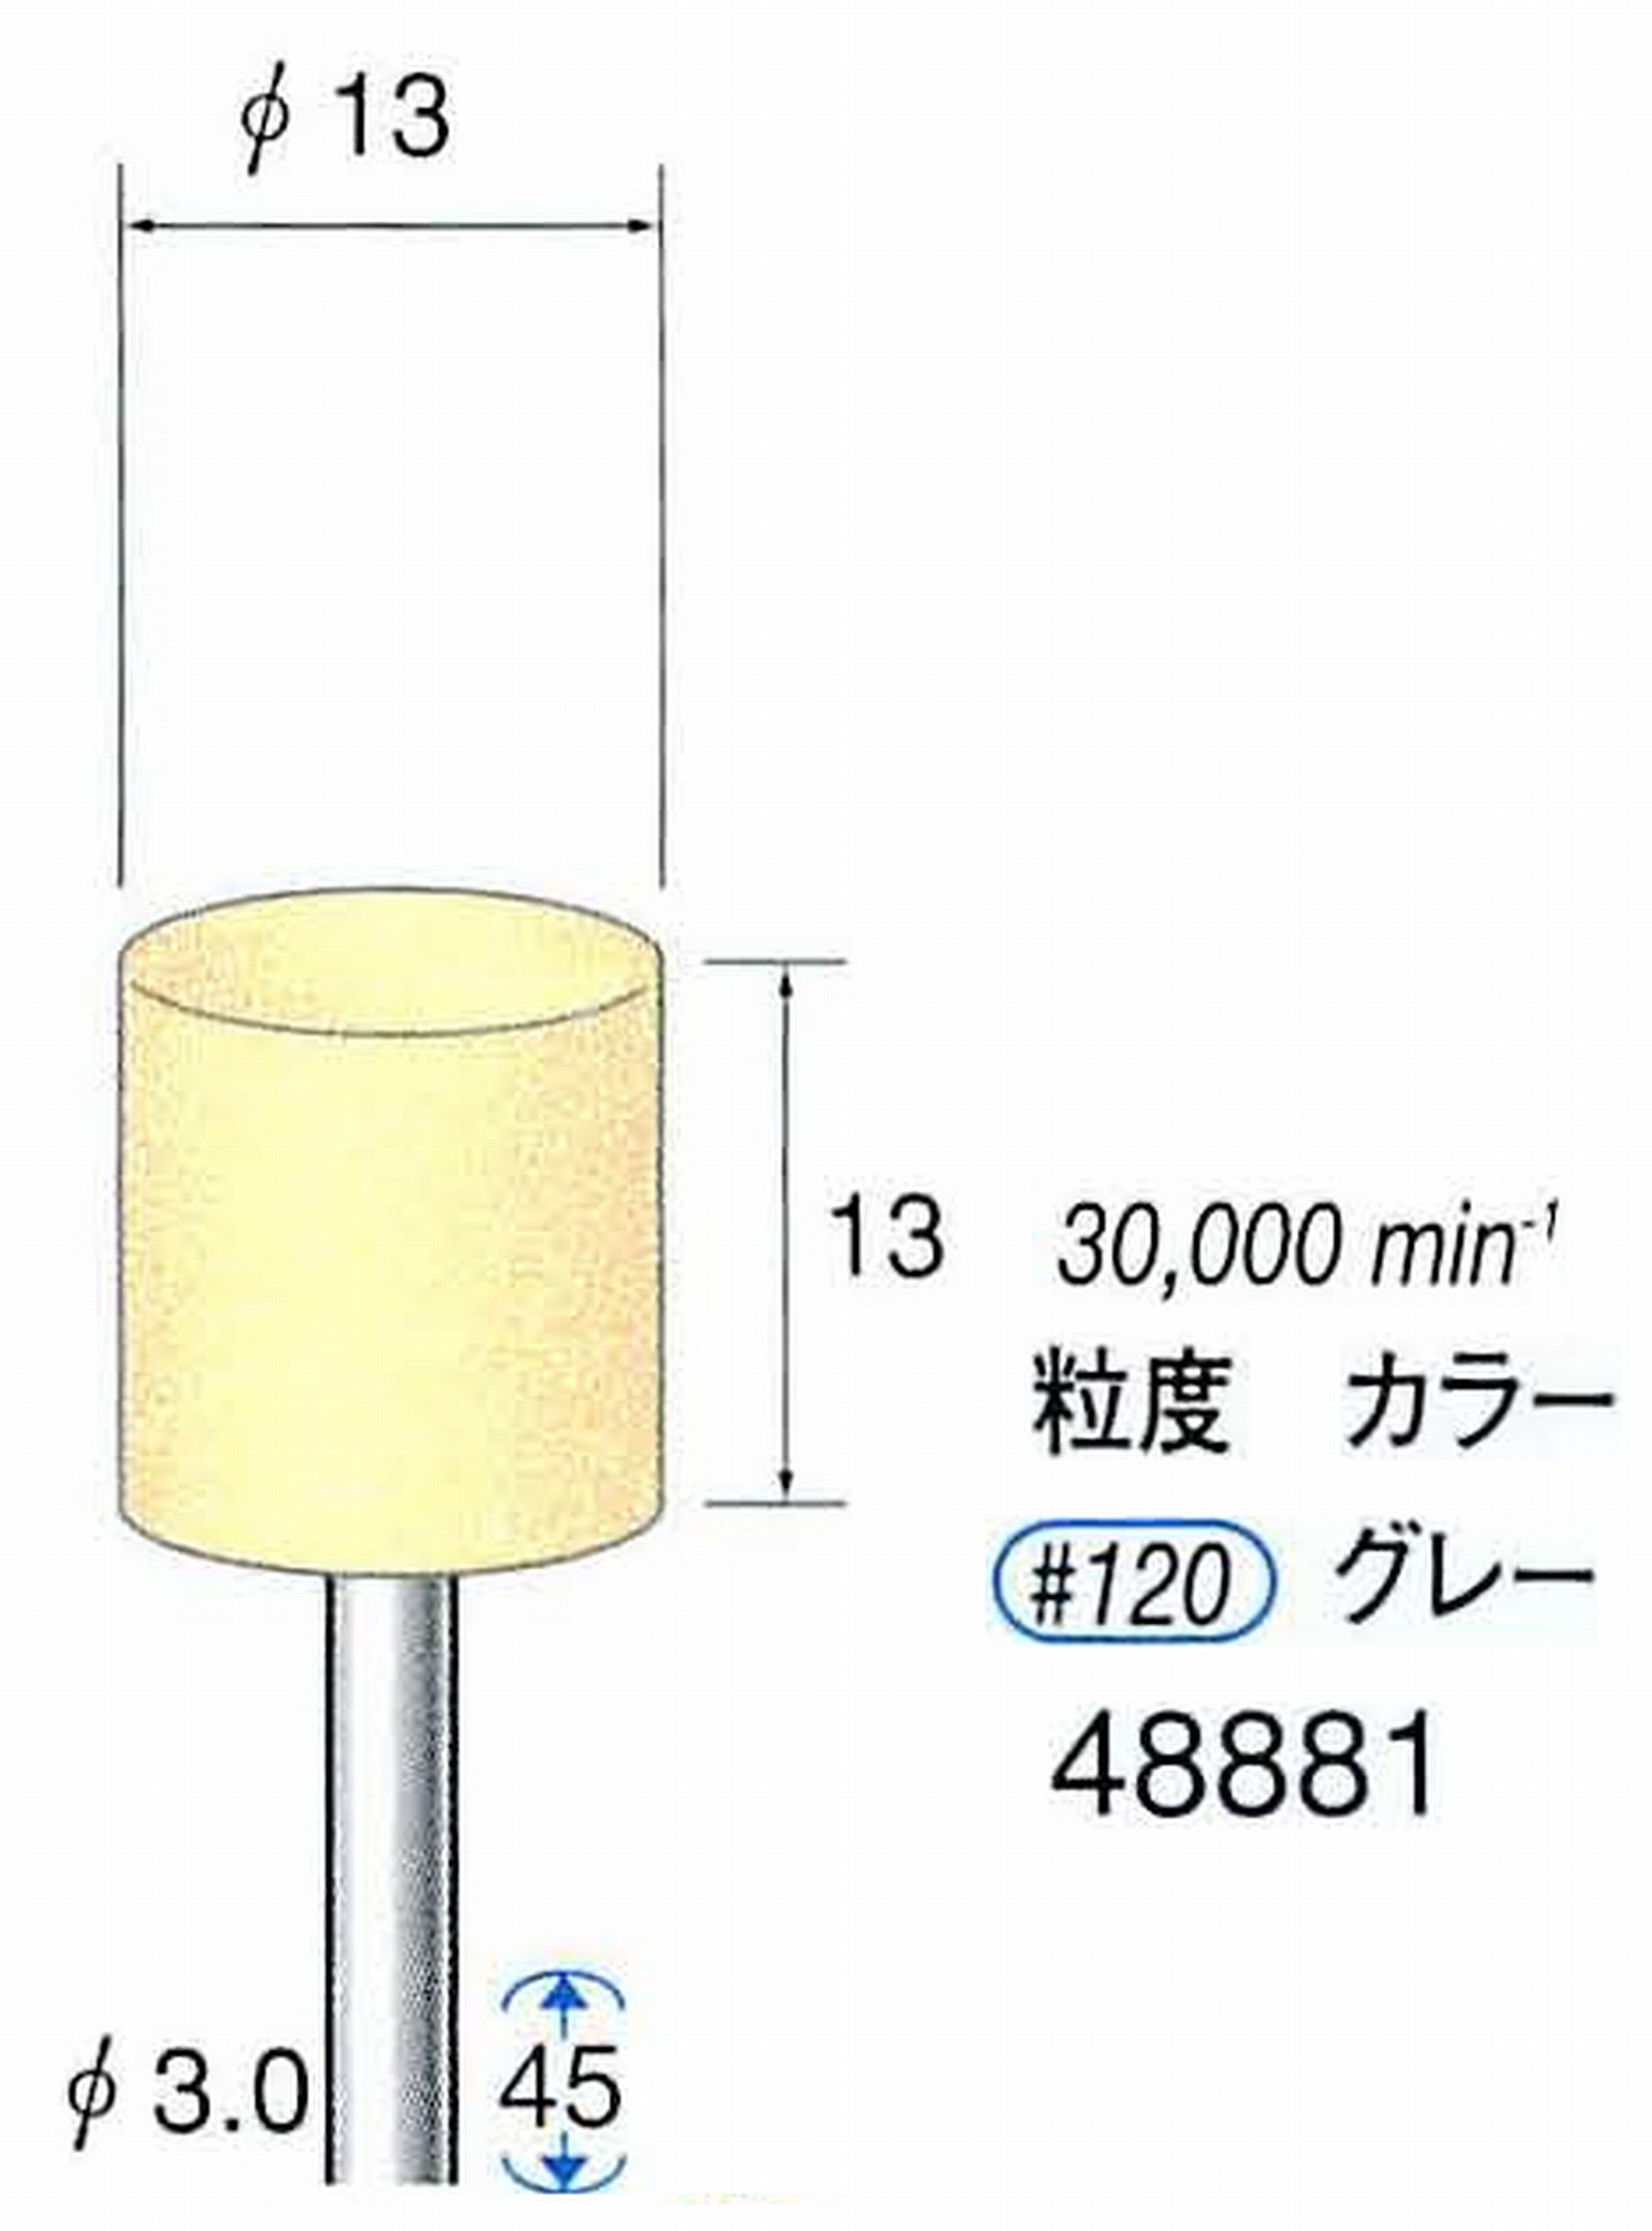 ナカニシ/NAKANISHI ポリッシュサンダー 軸径(シャンク)φ3.0mm 48881